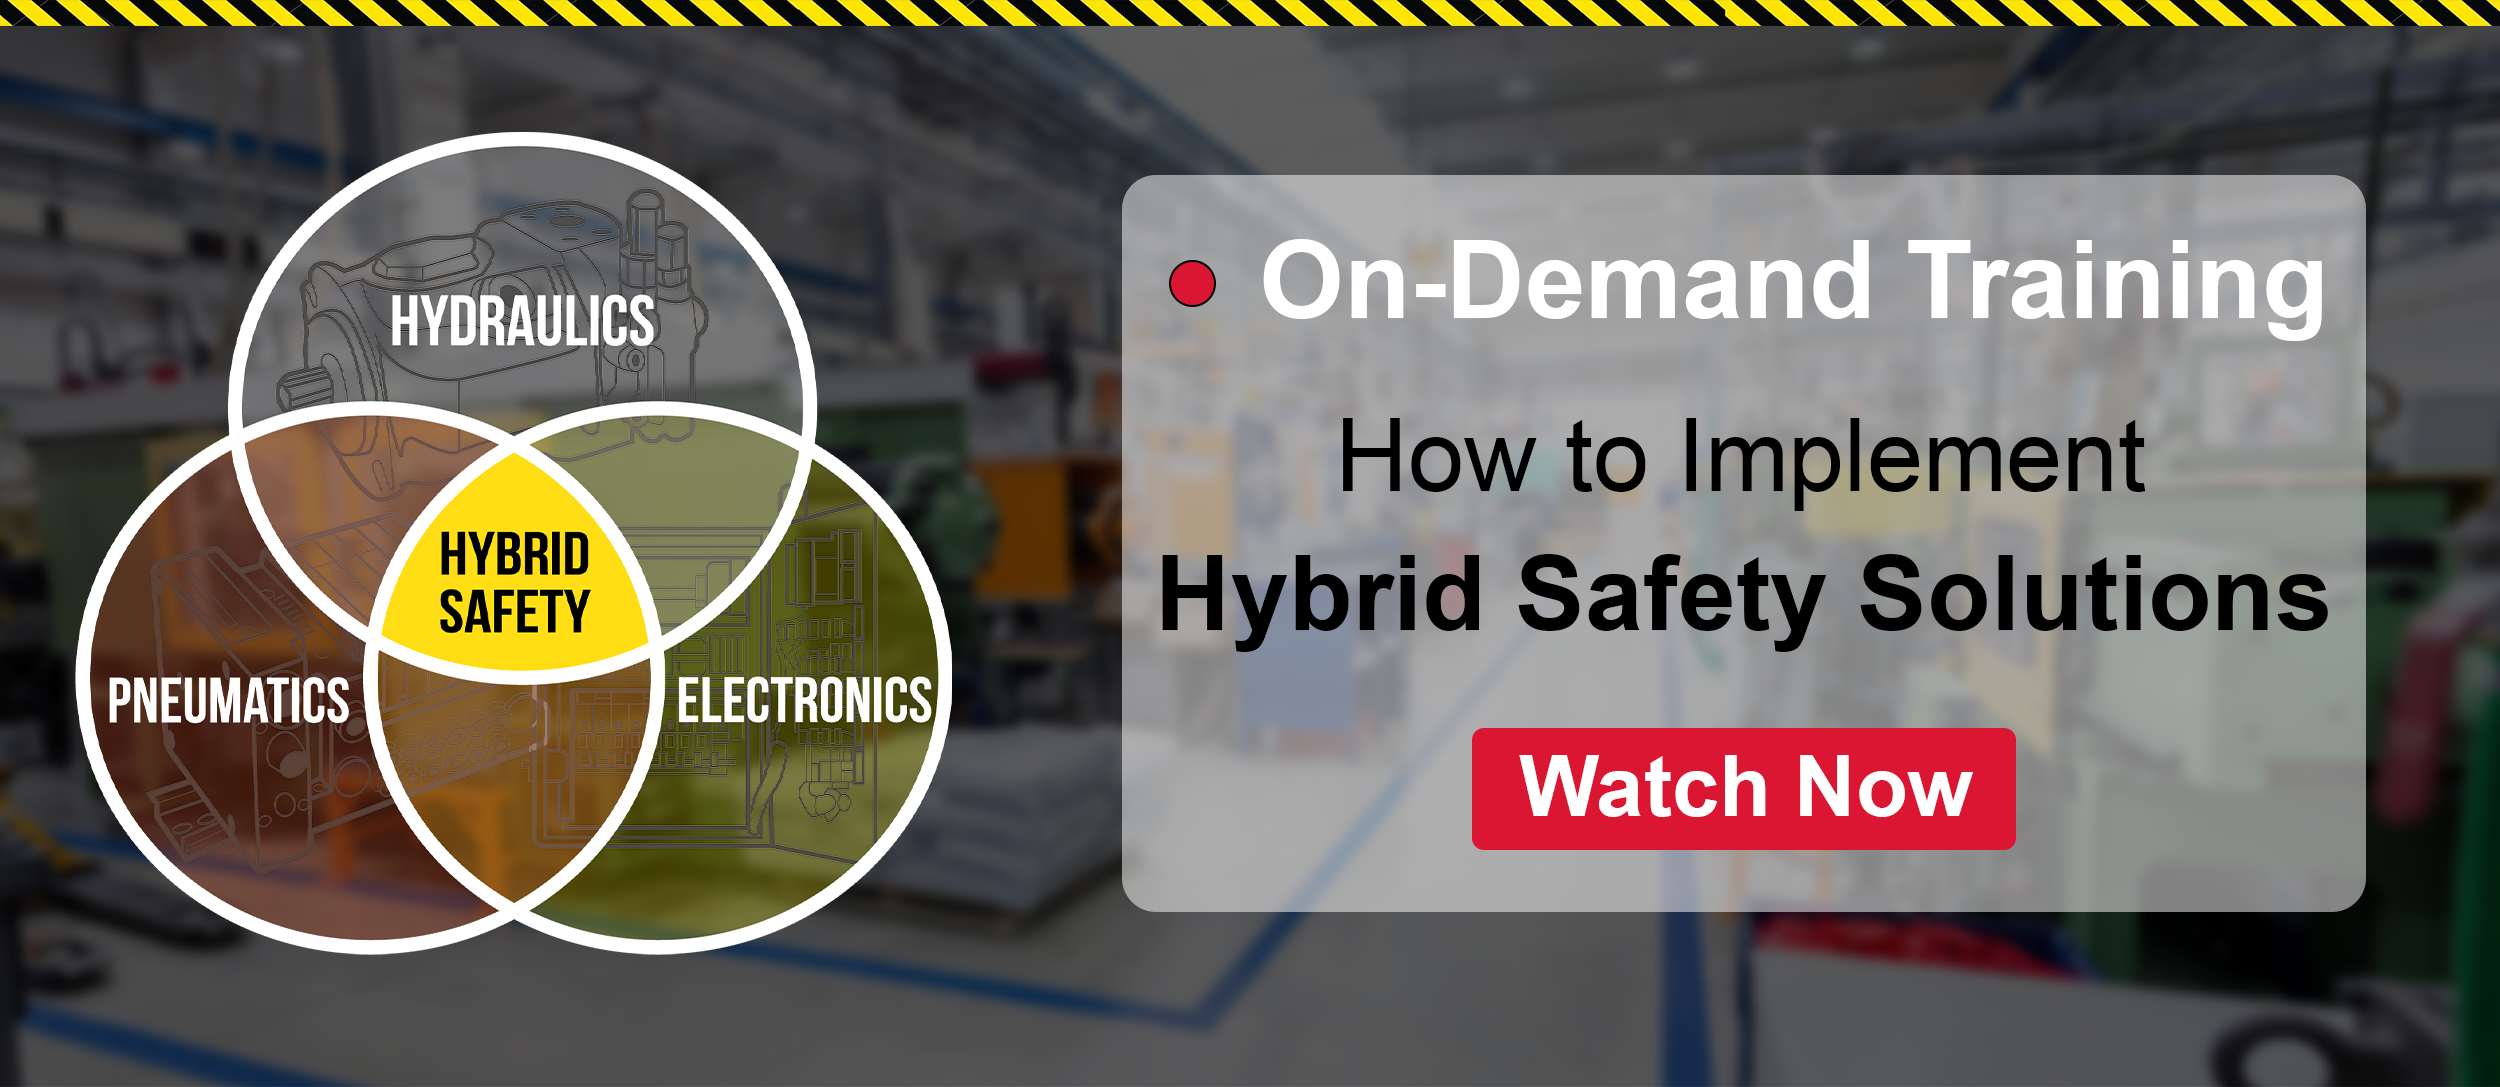 Hybrid Safety Webinar Download